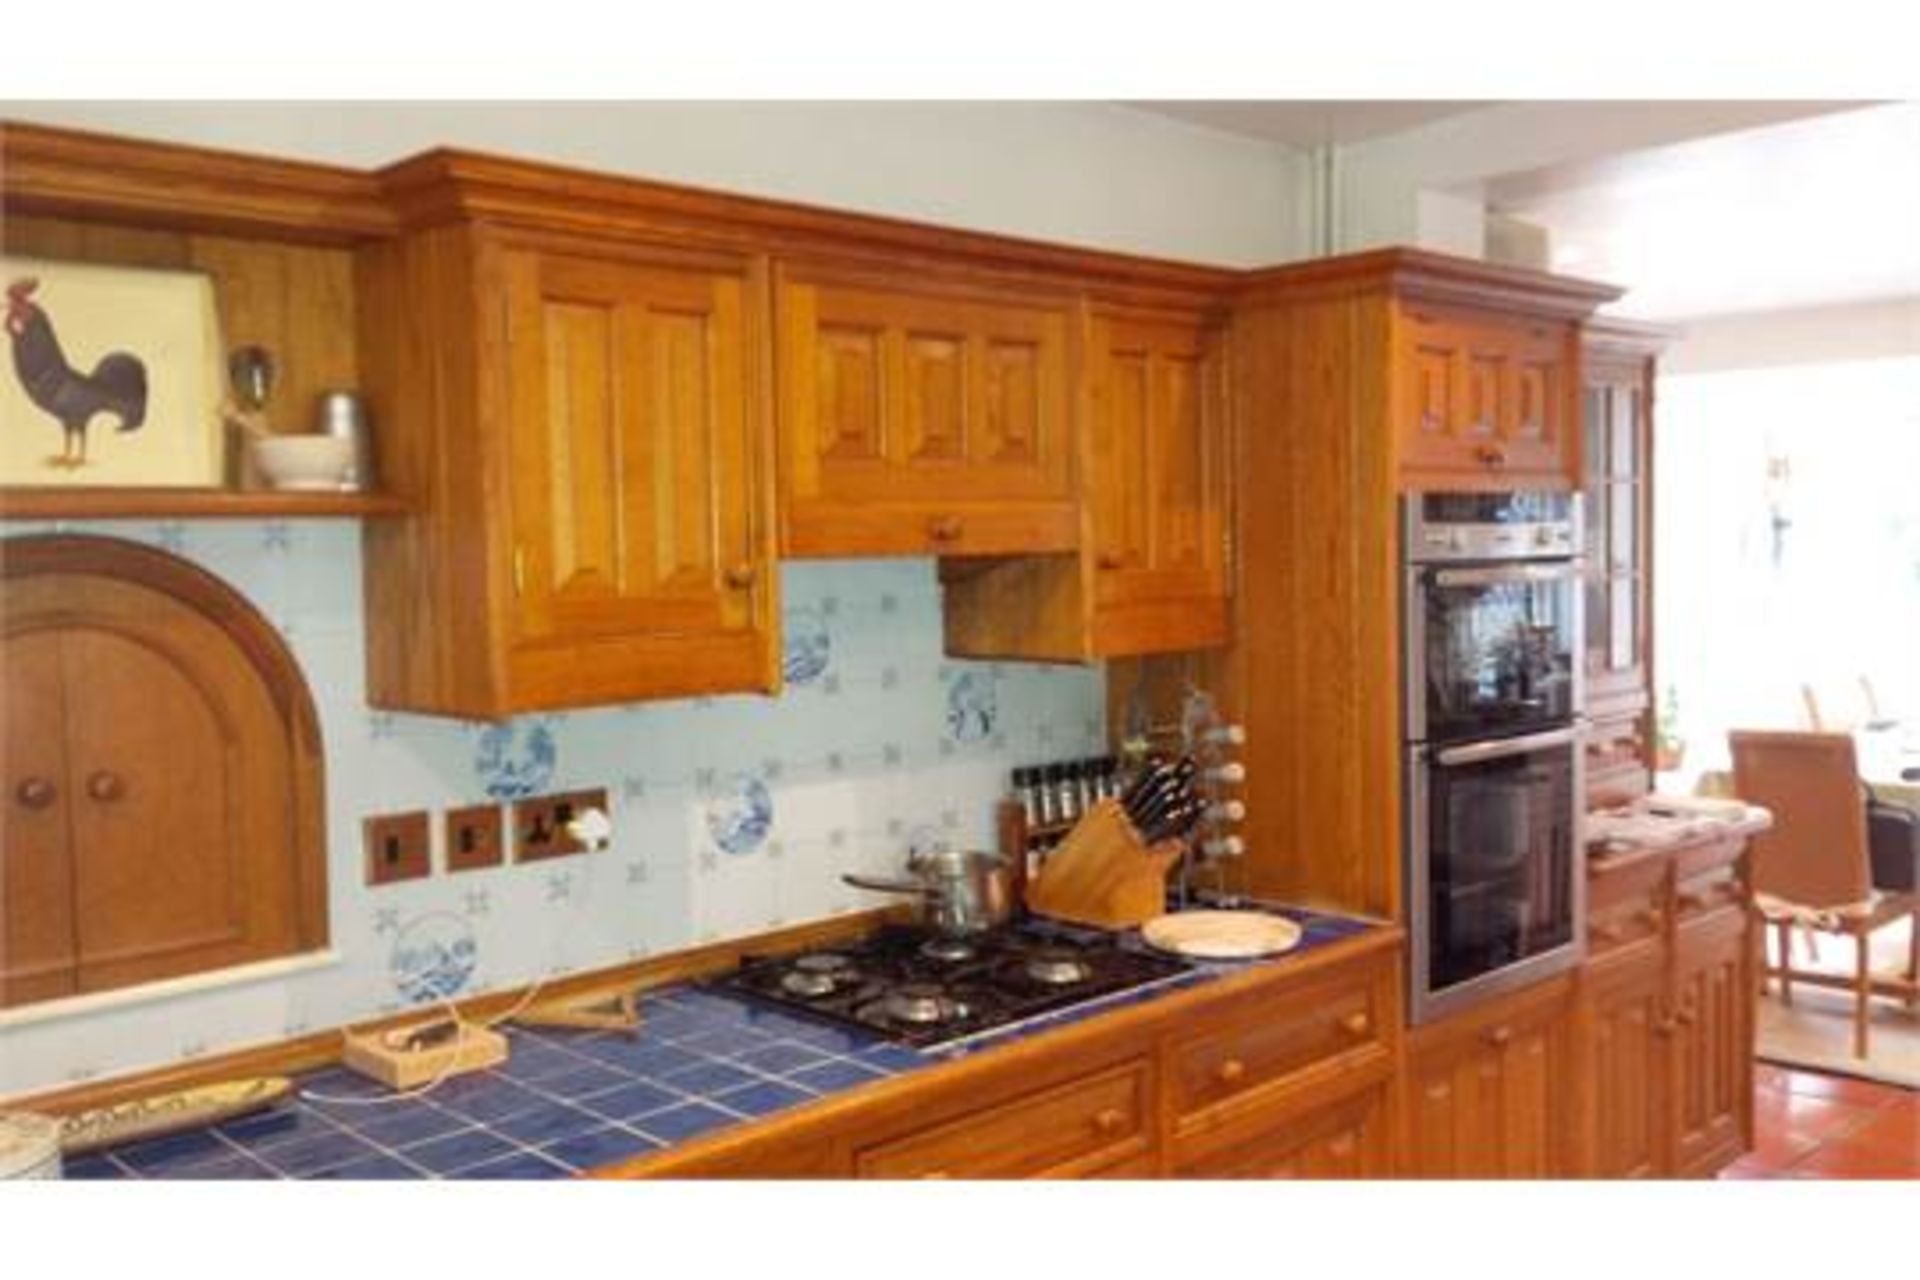 Luxury Used Smallbone English Oak Kitchen and Appliances - Image 4 of 11